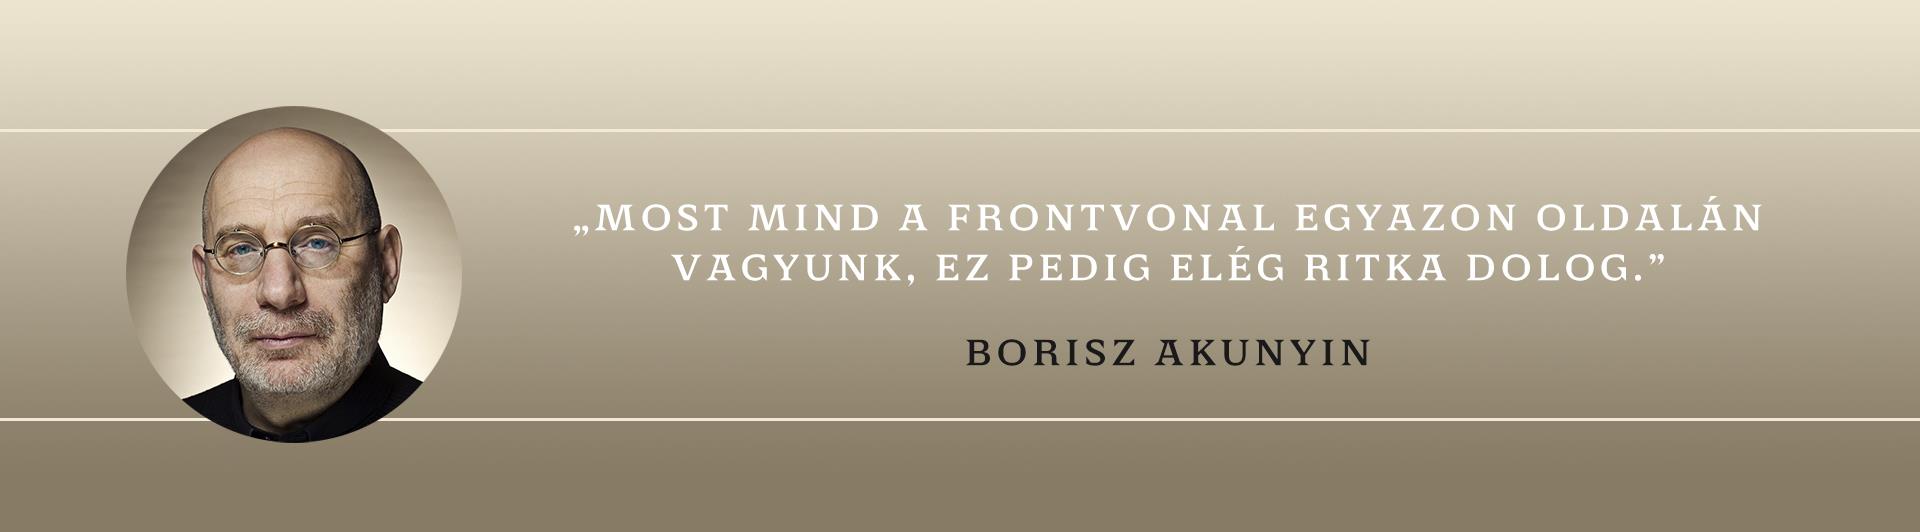 Borisz Akunyin gondolatai a járvánnyal kapcsolatban